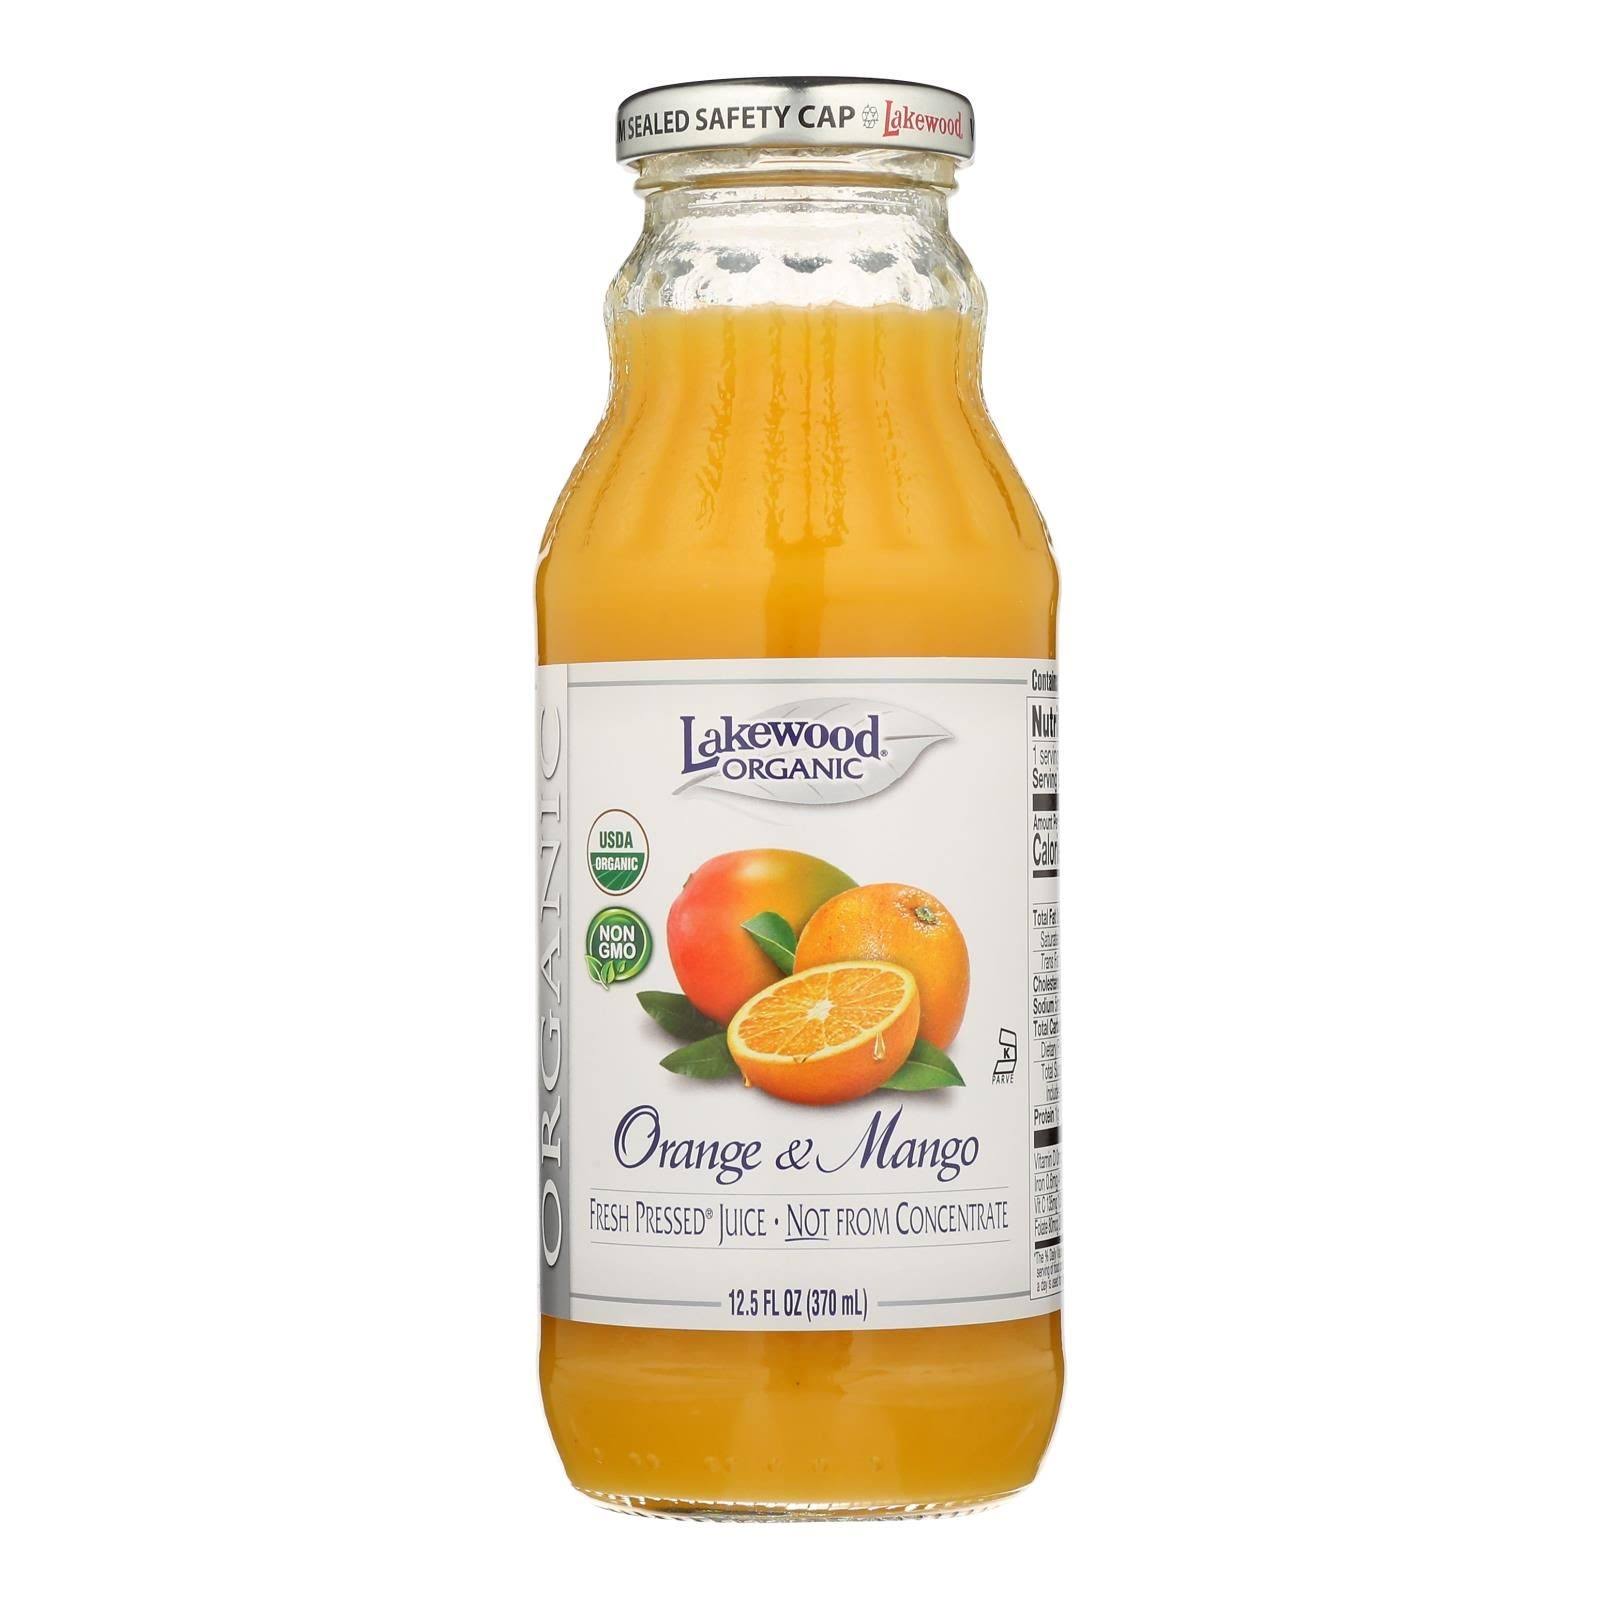 Lakewood Organic Juice - Orange and Mango, 12.5oz